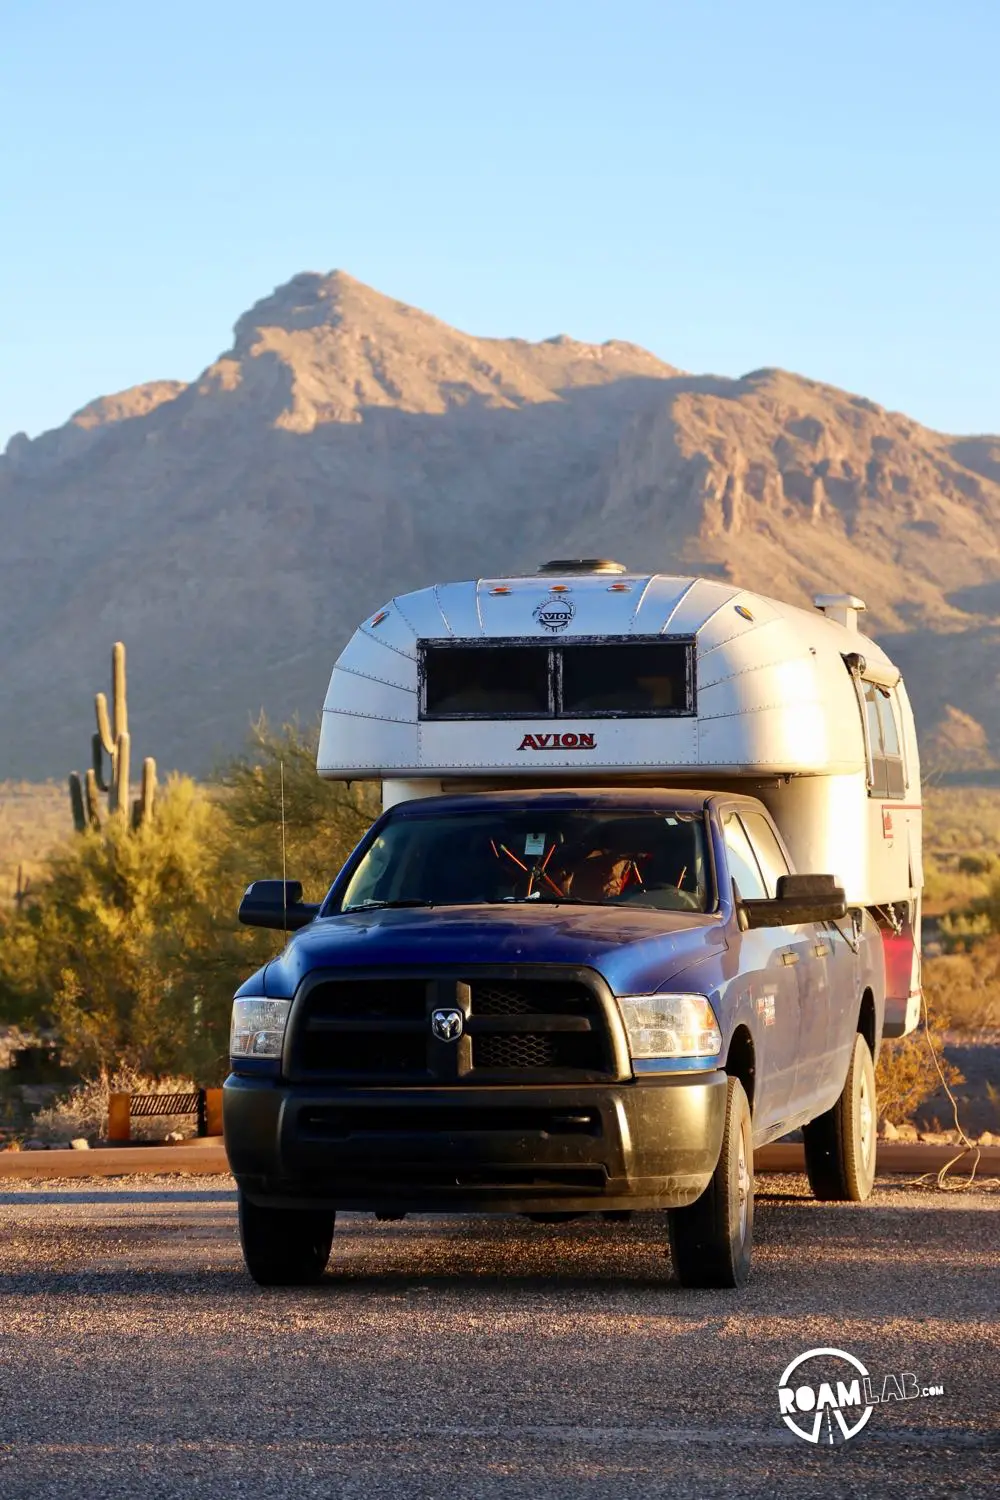 Our Avion Ultra C11 truck camper at Picacho Peak State Park, Arizona